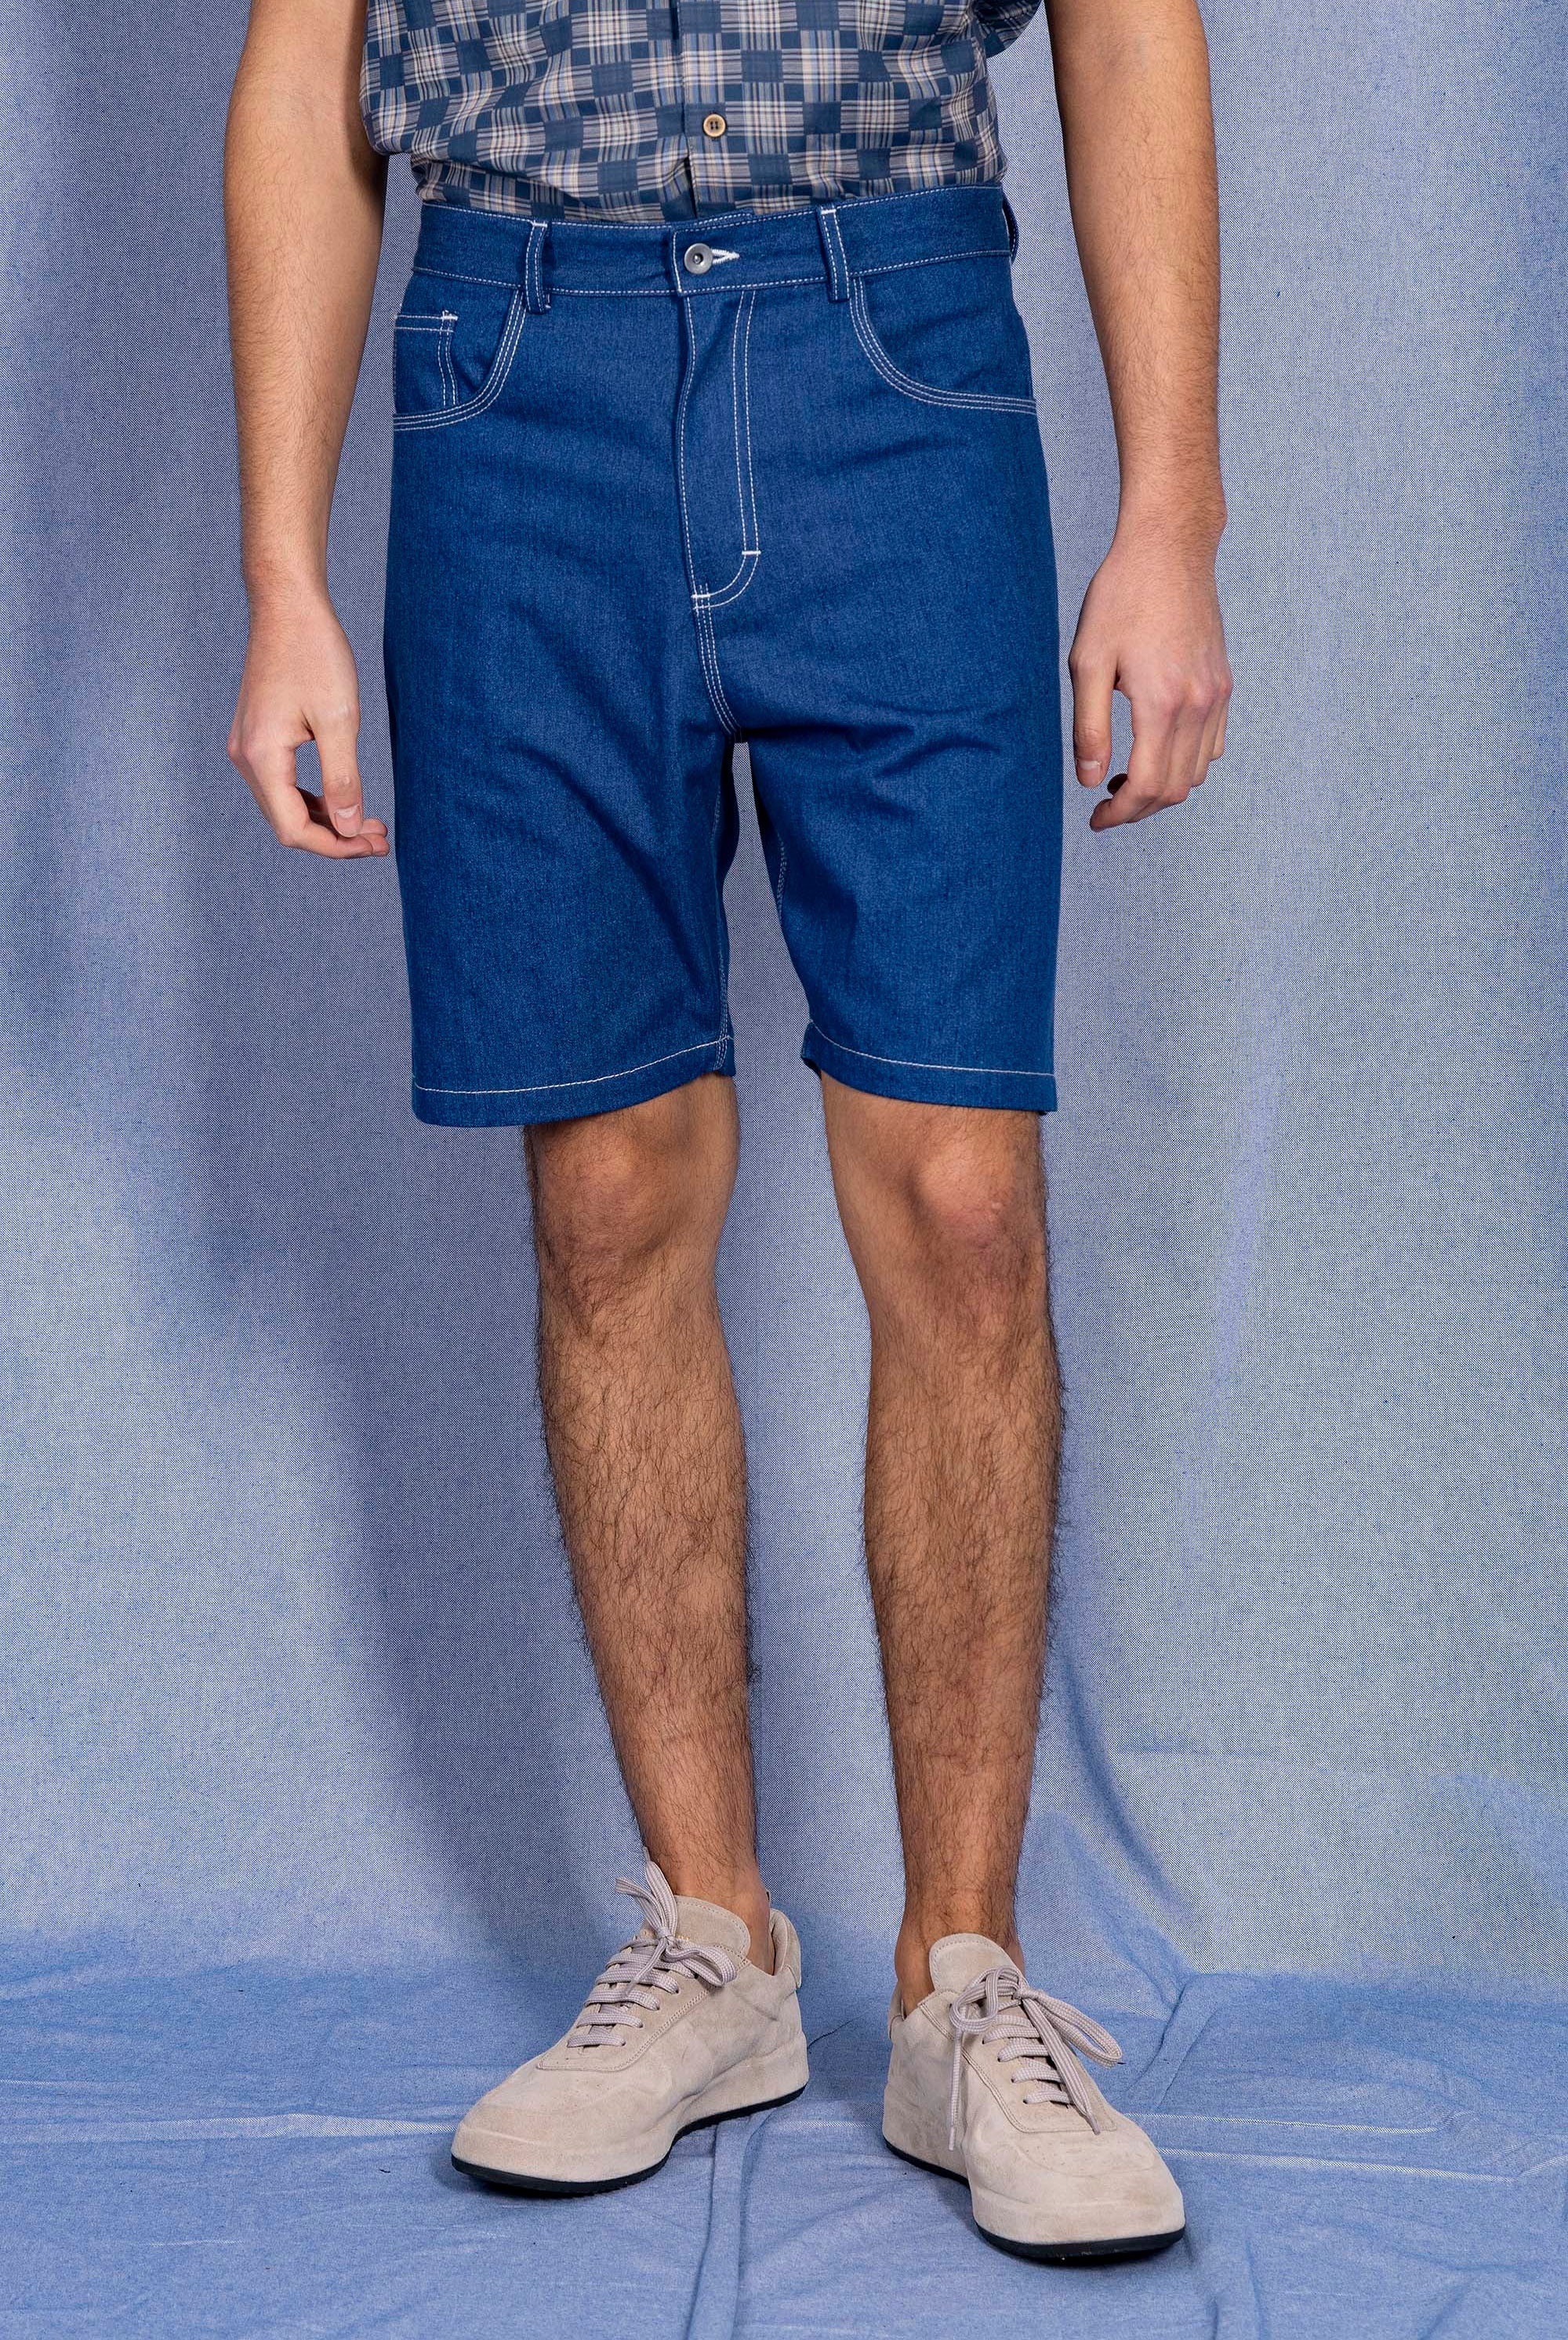 Short Axel Bleu Denim pantalons élégants pour hommes, déclinés dans une large gamme de motifs et de coupes